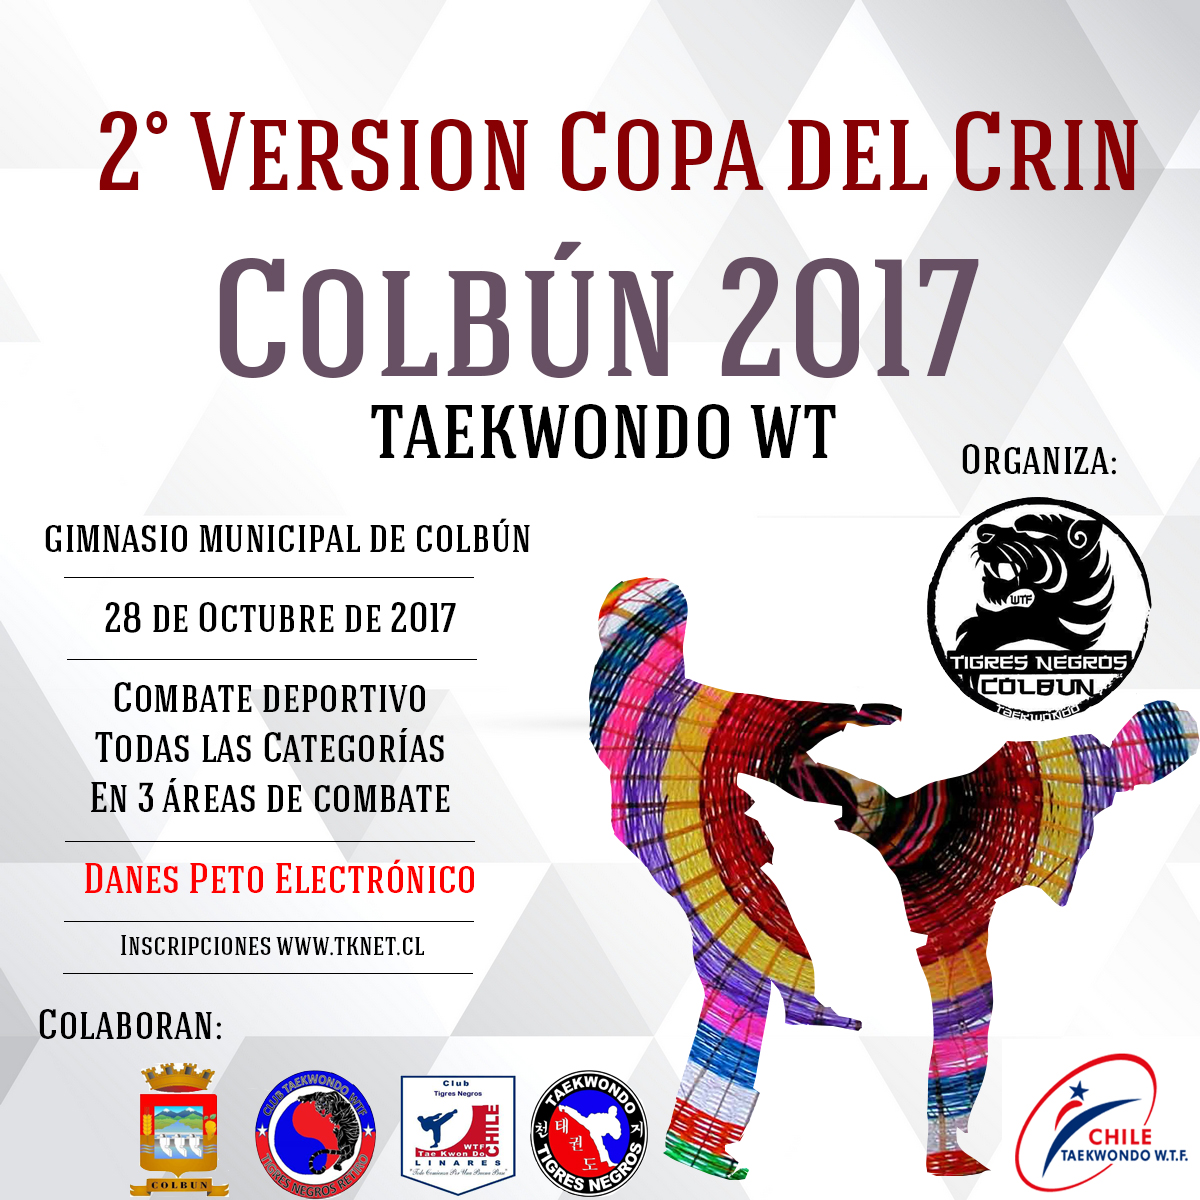 2 Version Copa Del Crin